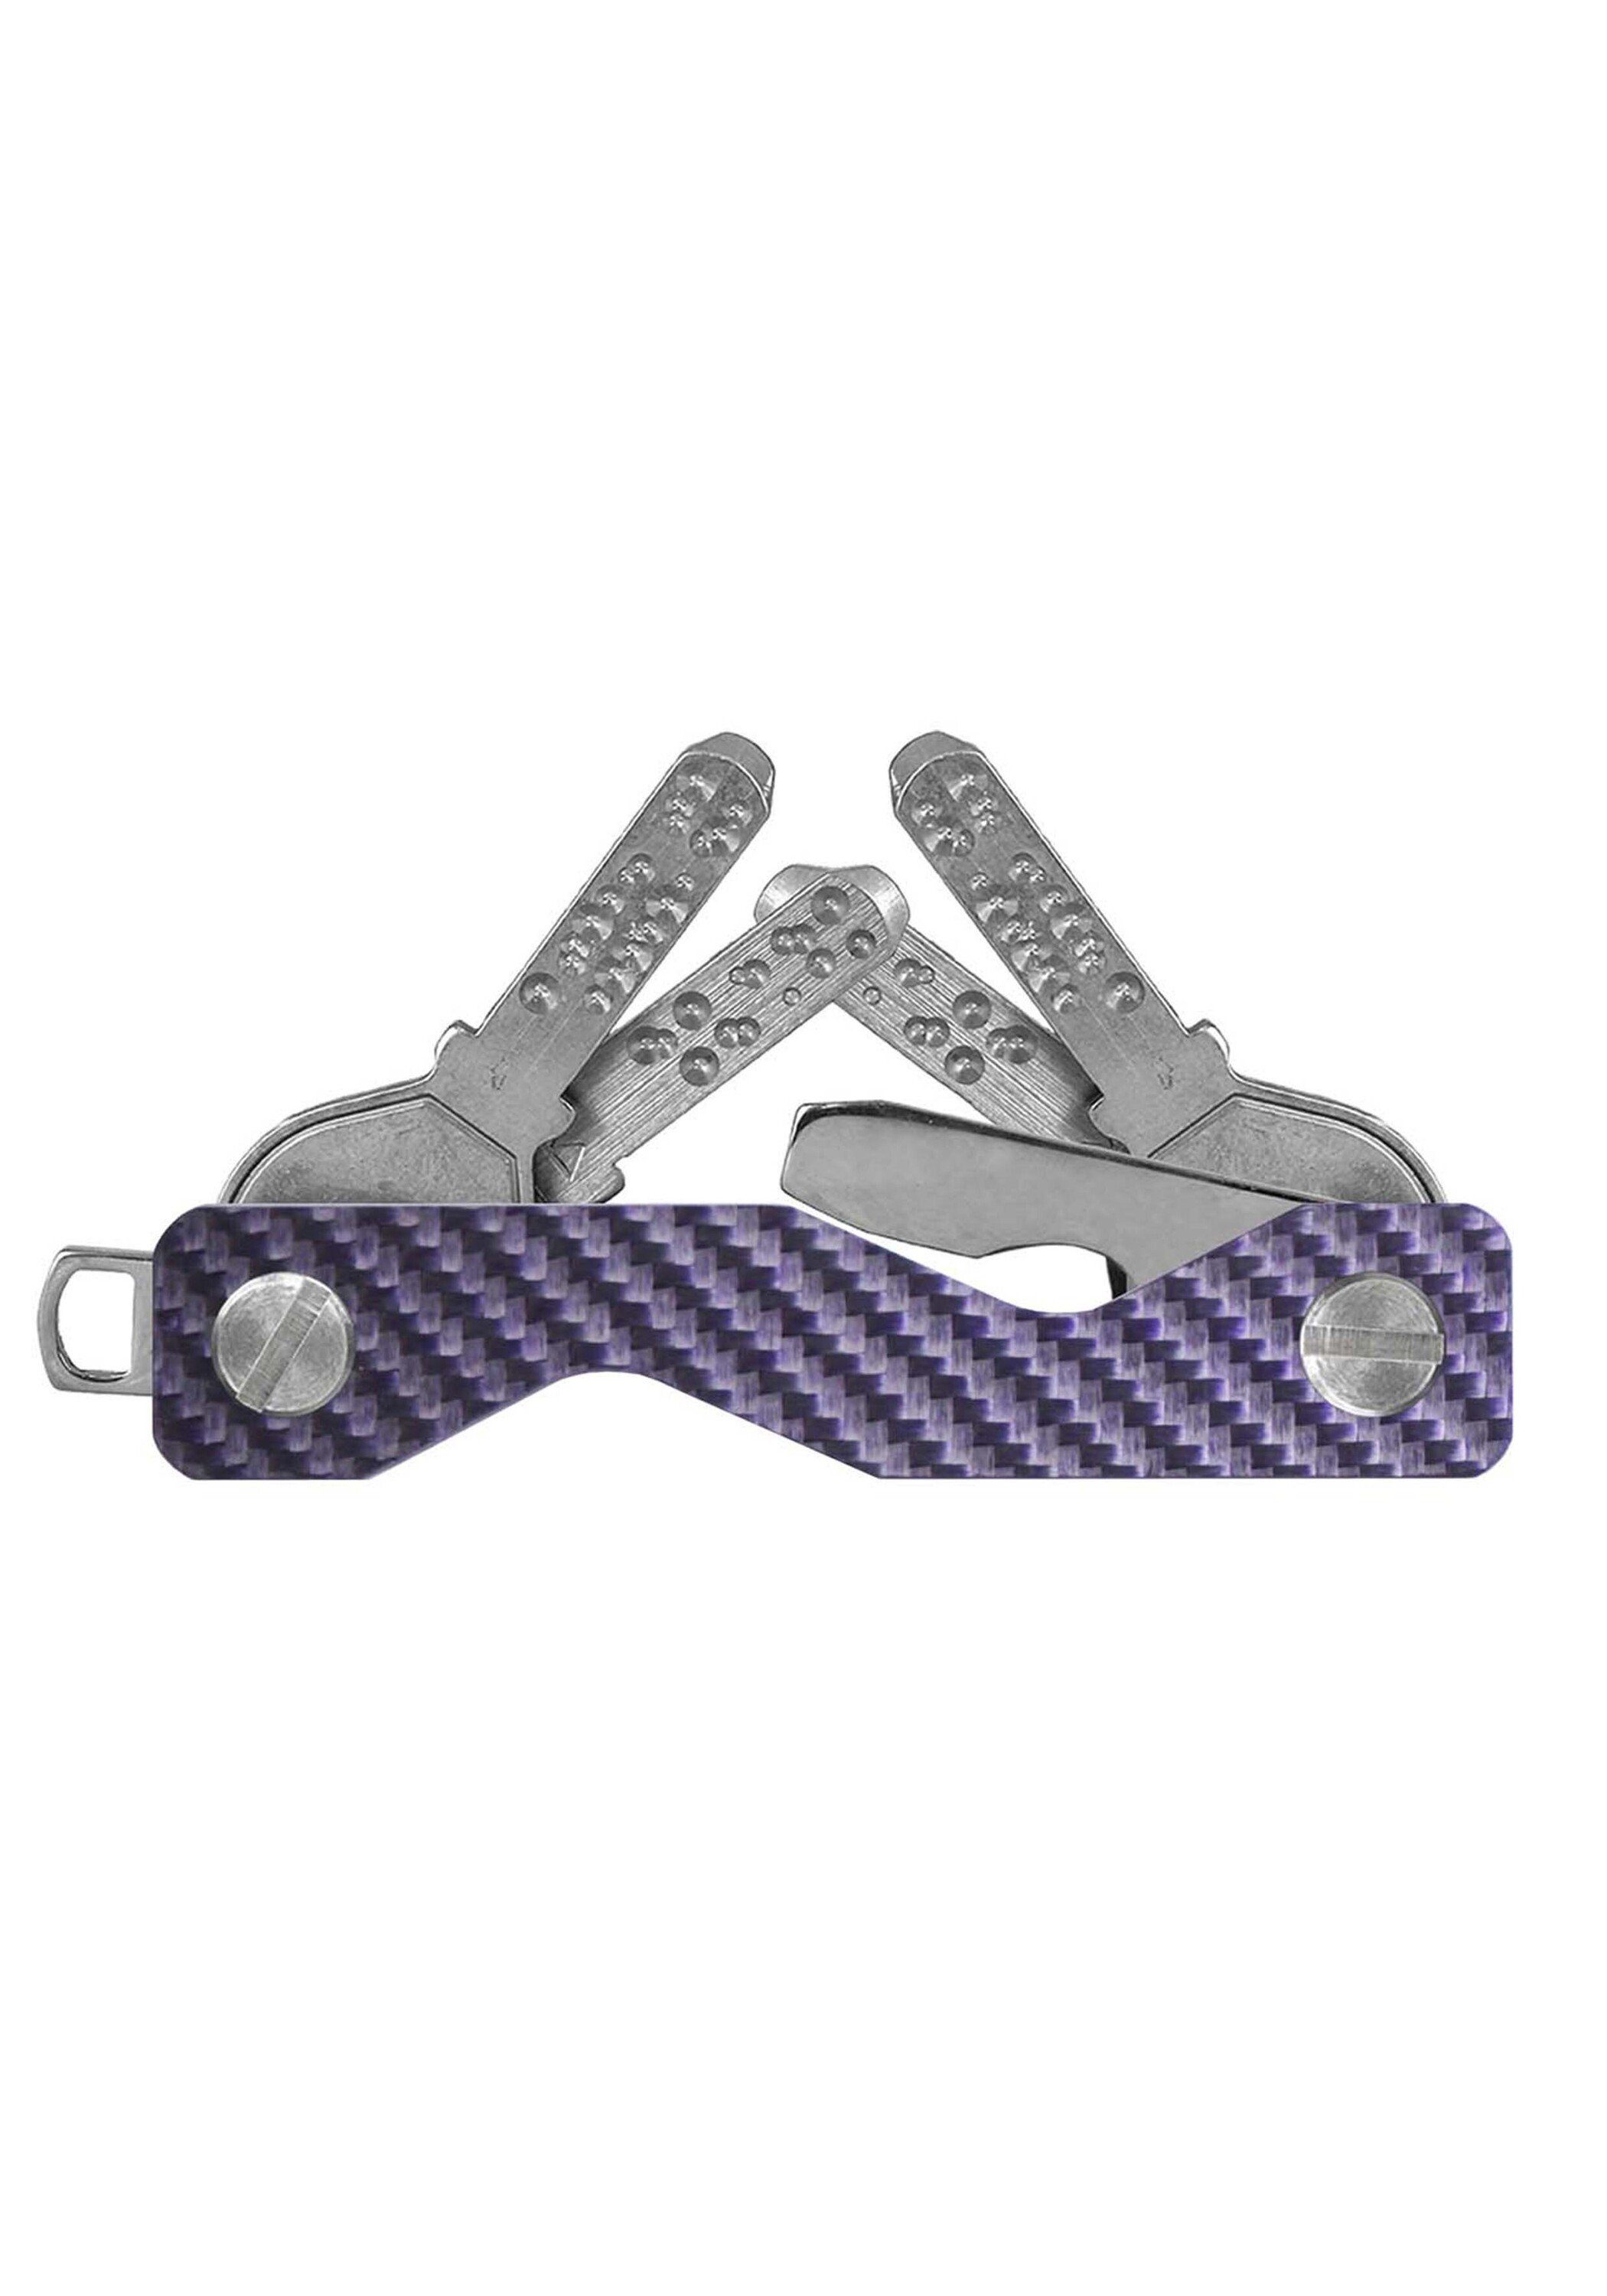 keycabins Schlüsselanhänger Carbon S3, SWISS Made violett